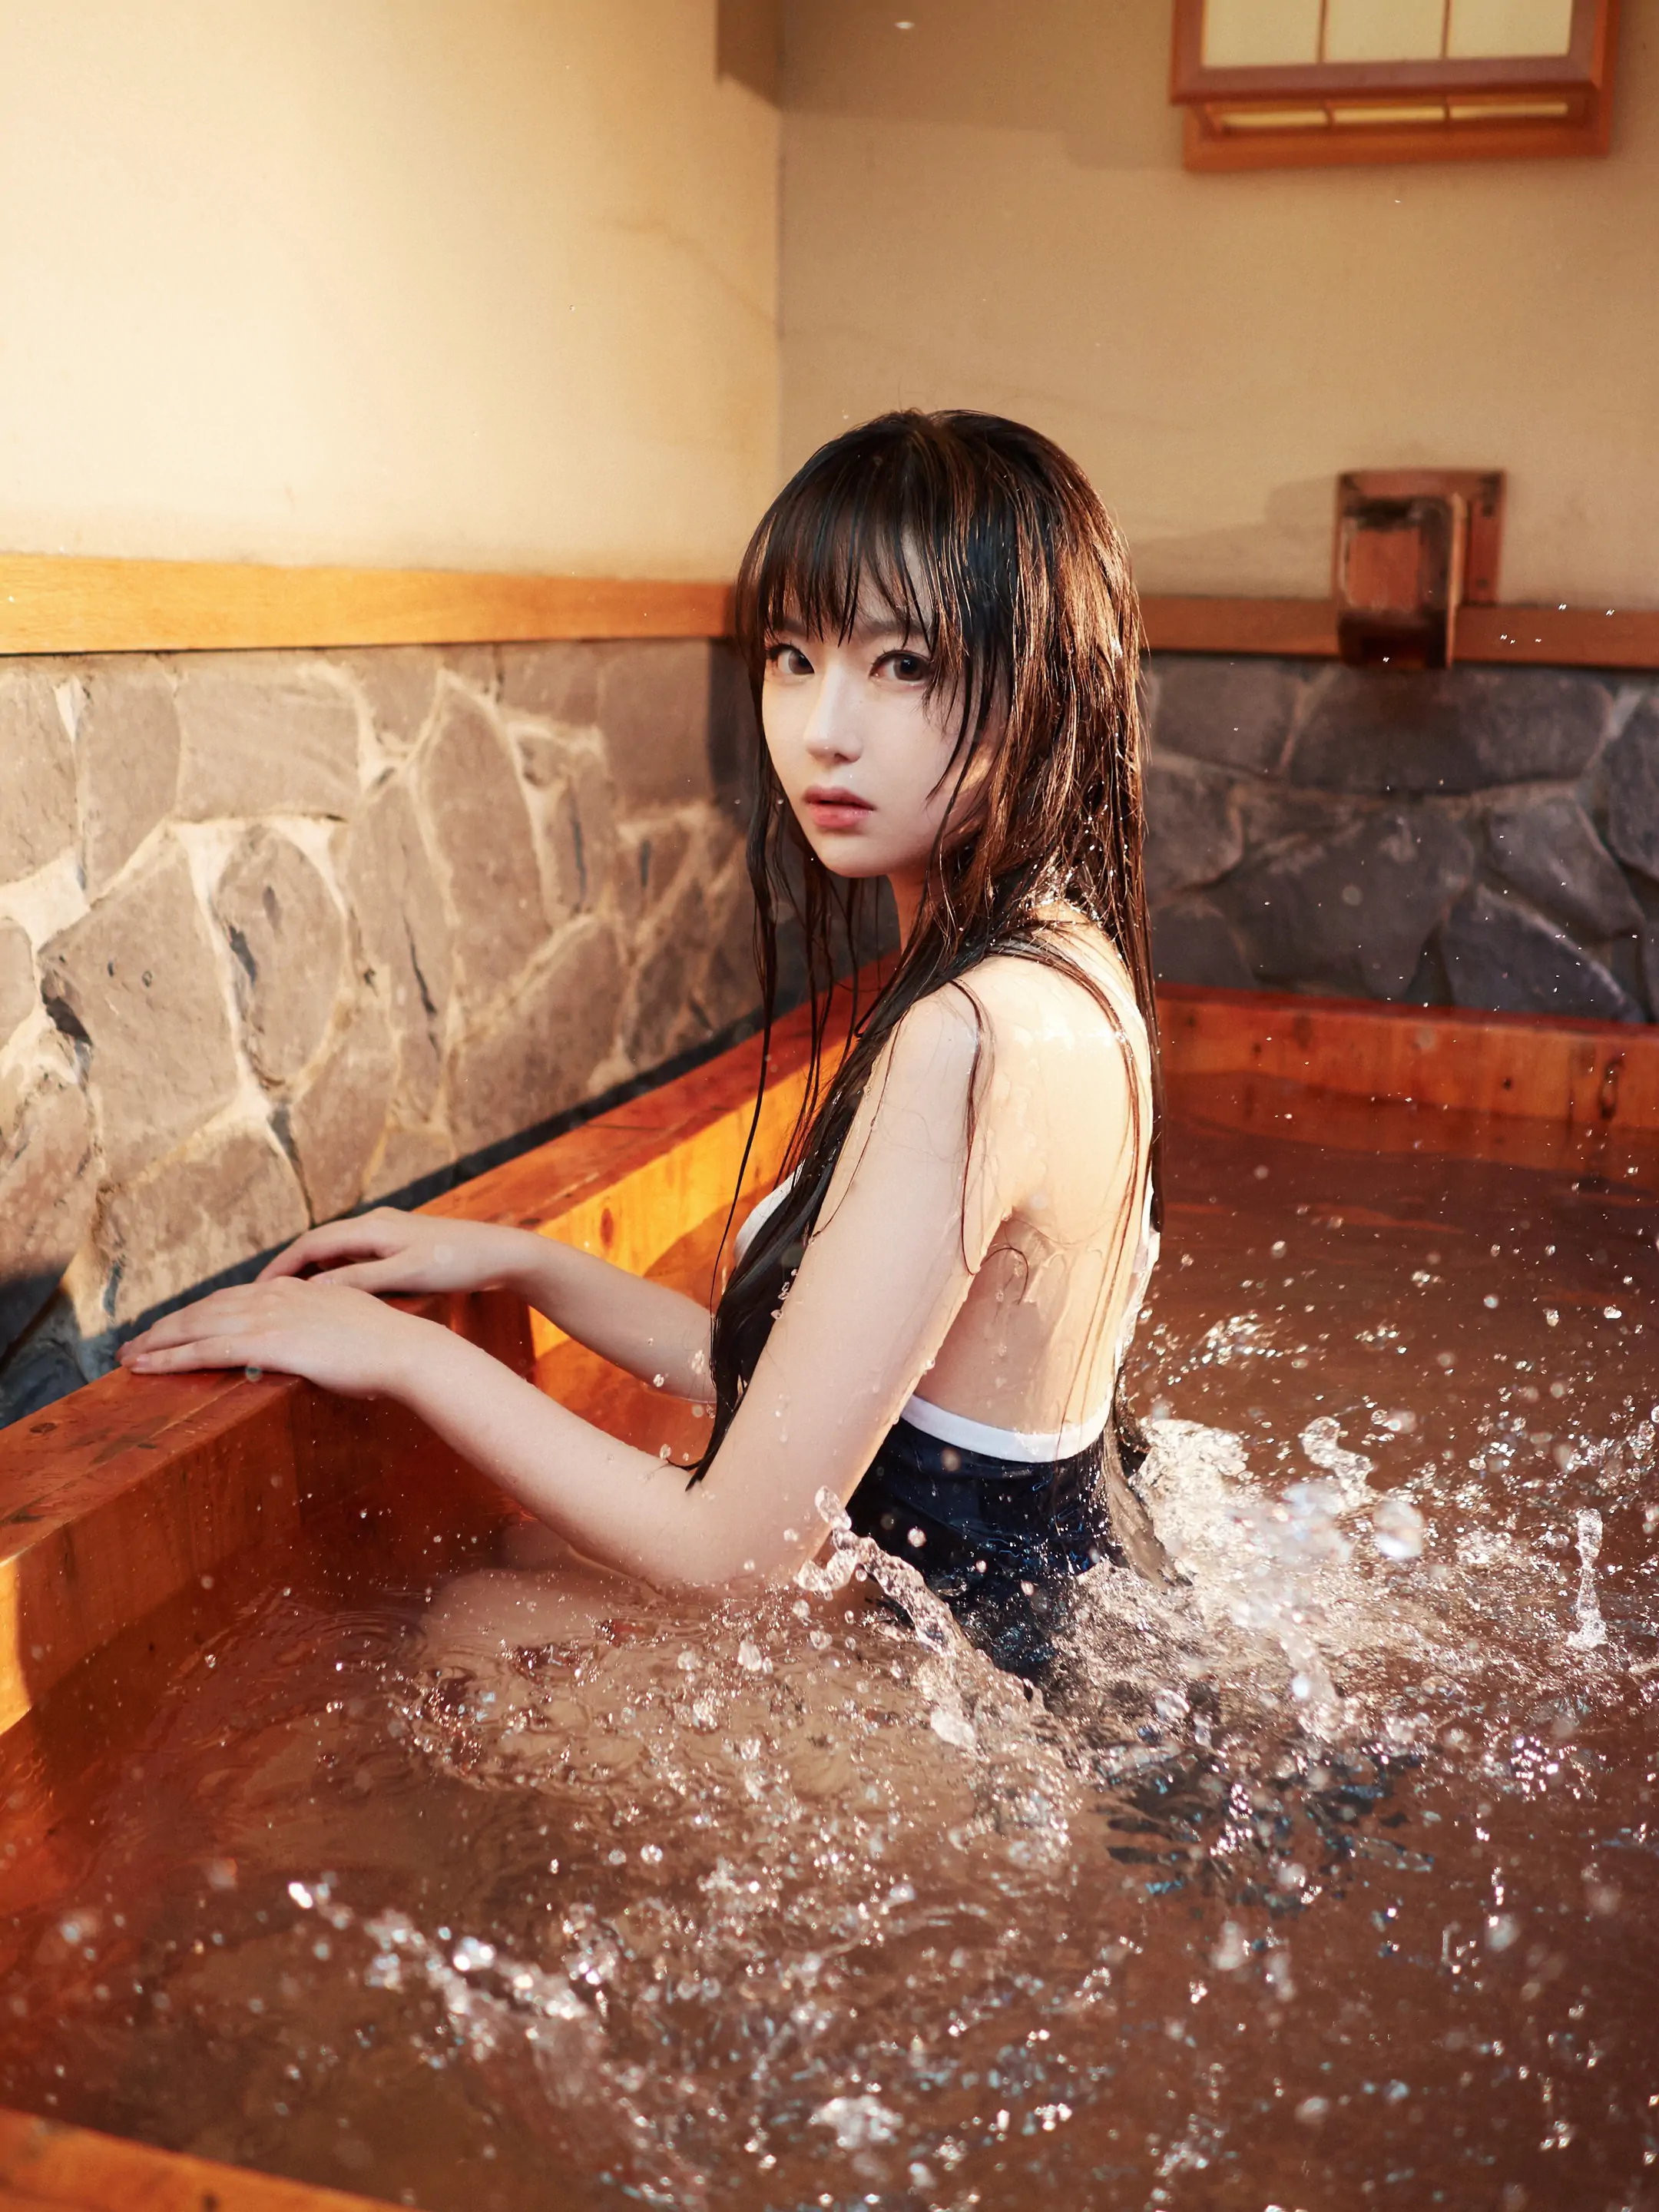 Japanese bath